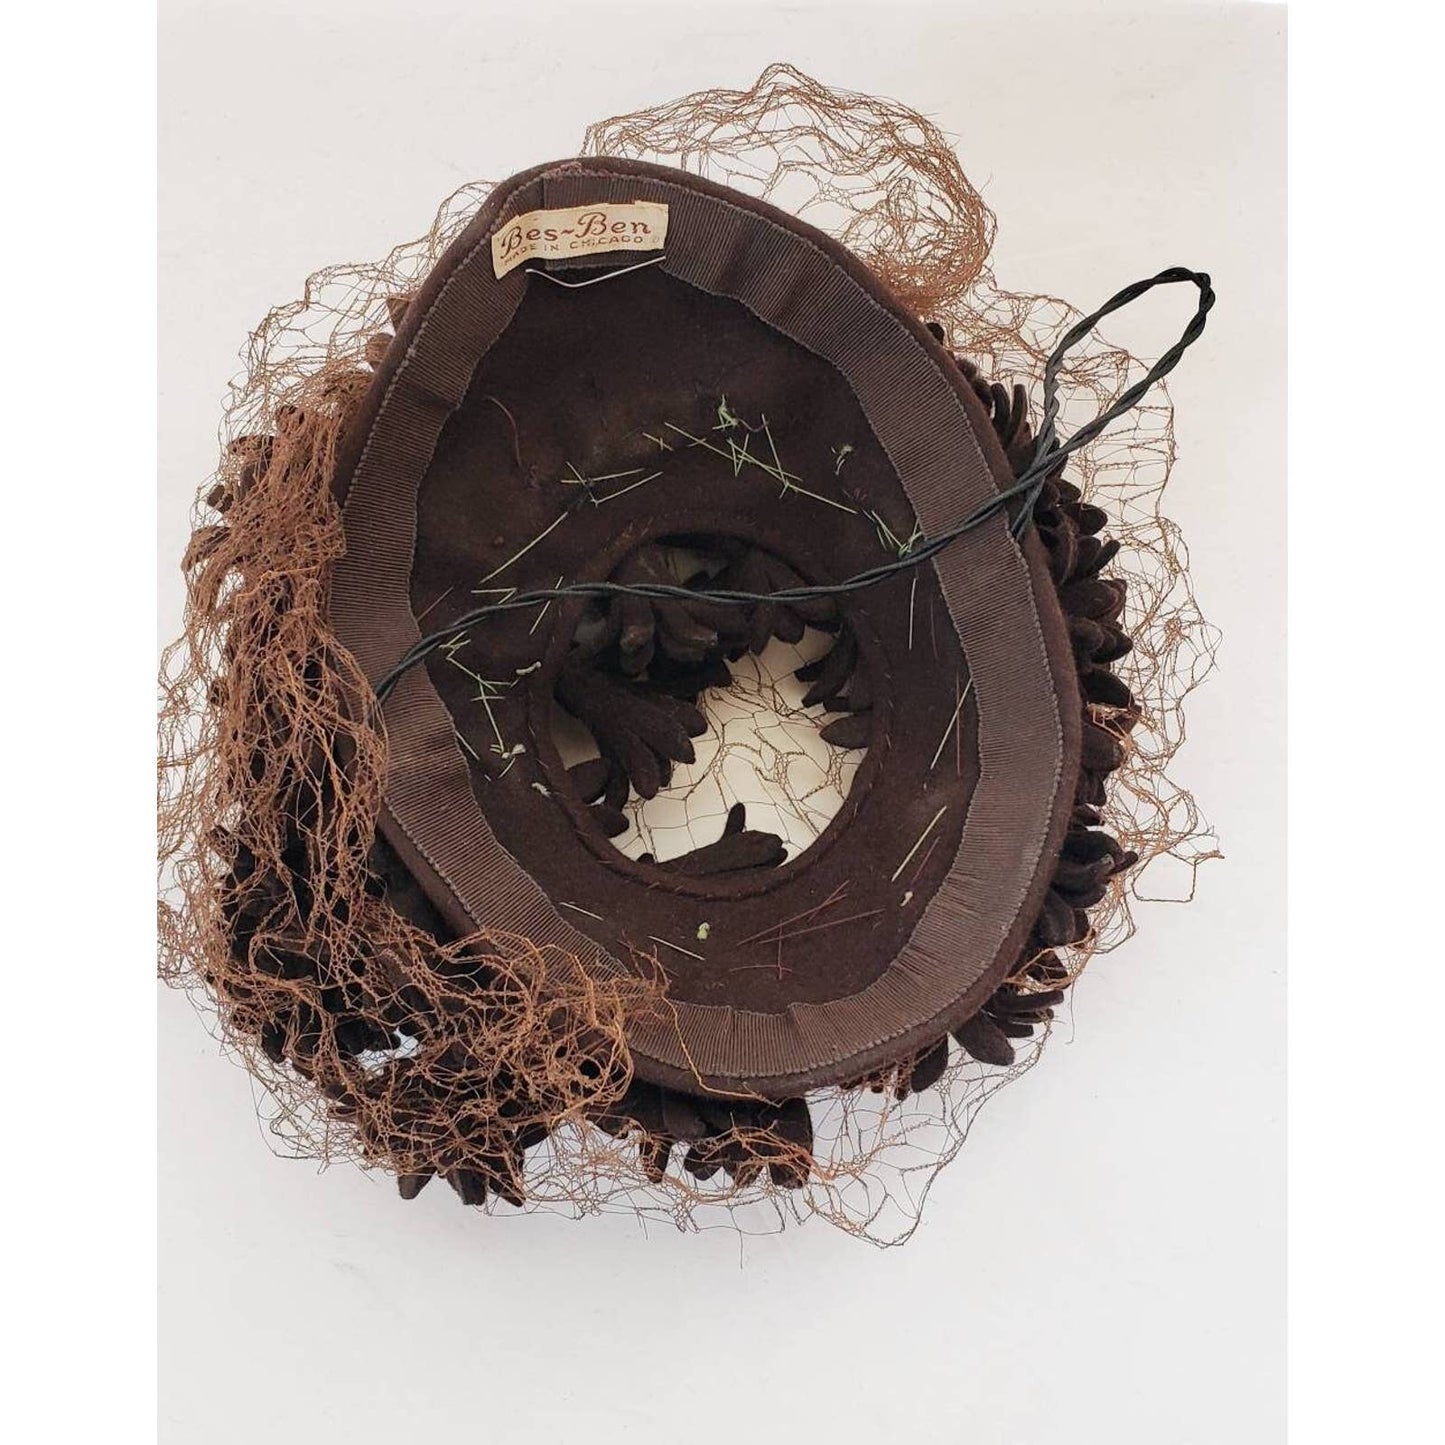 40s Bes-Ben Hat in Brown Wool Floral Crown